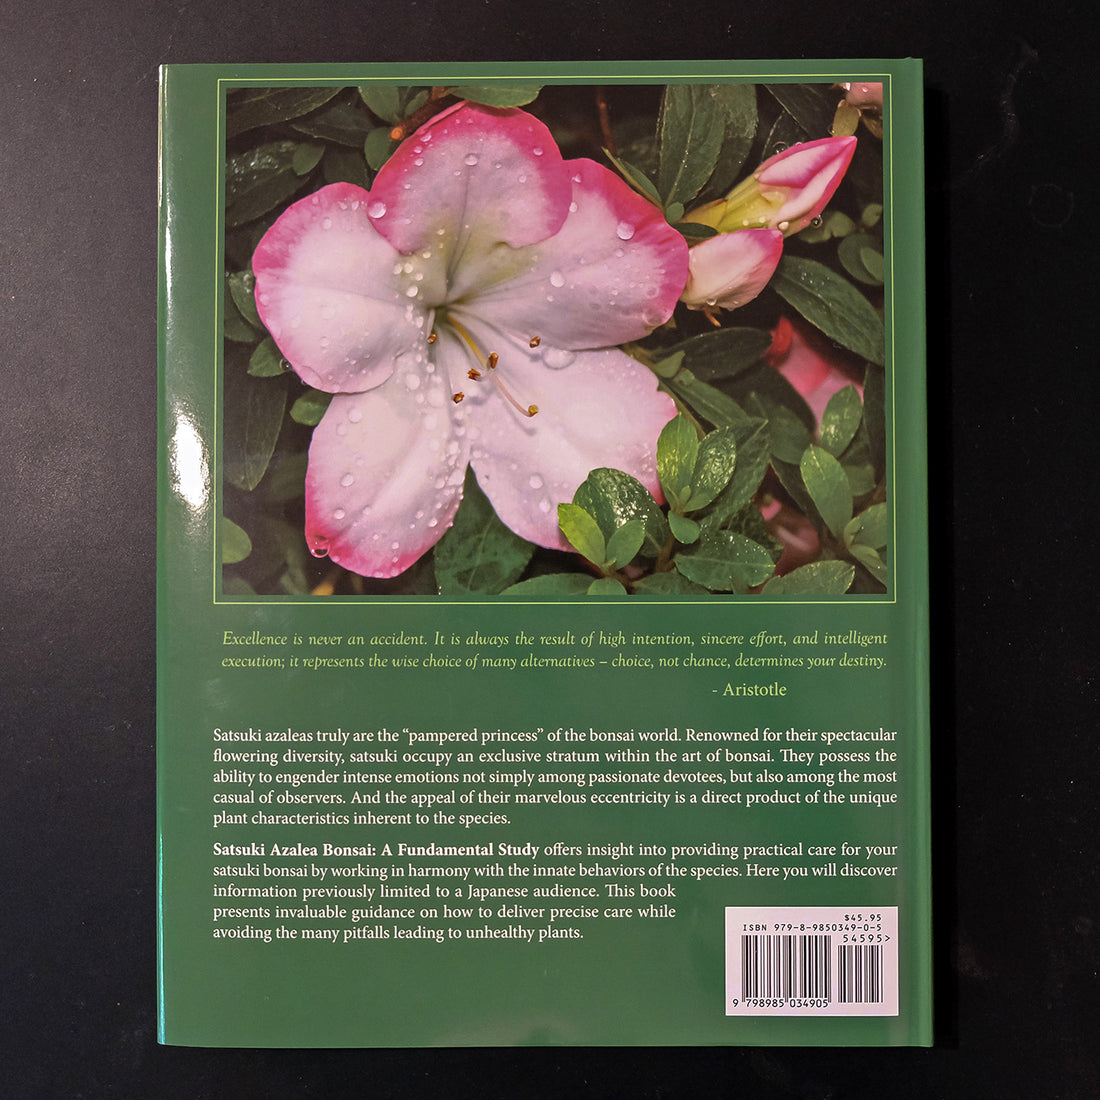 Satsuki Azalea Bonsai: A Fundamental Study - Regular Edition